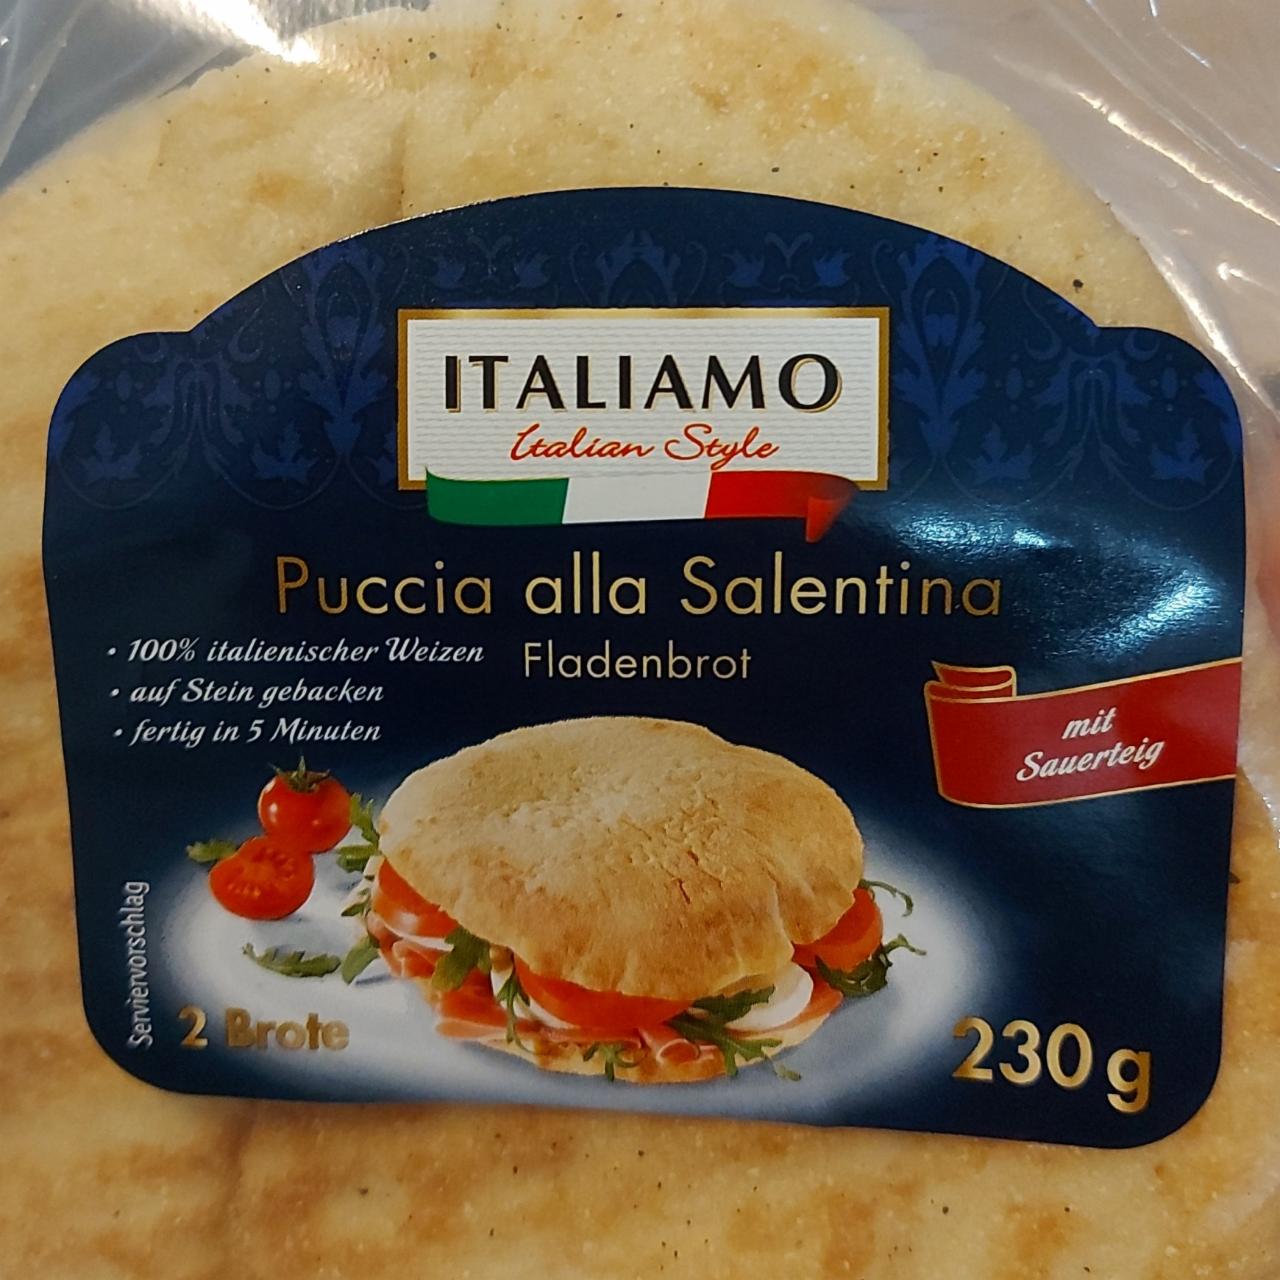 хлебобулочное изделие alla Italiamo пищевая Puccia Salentina ⋙ - калорийность, ценность